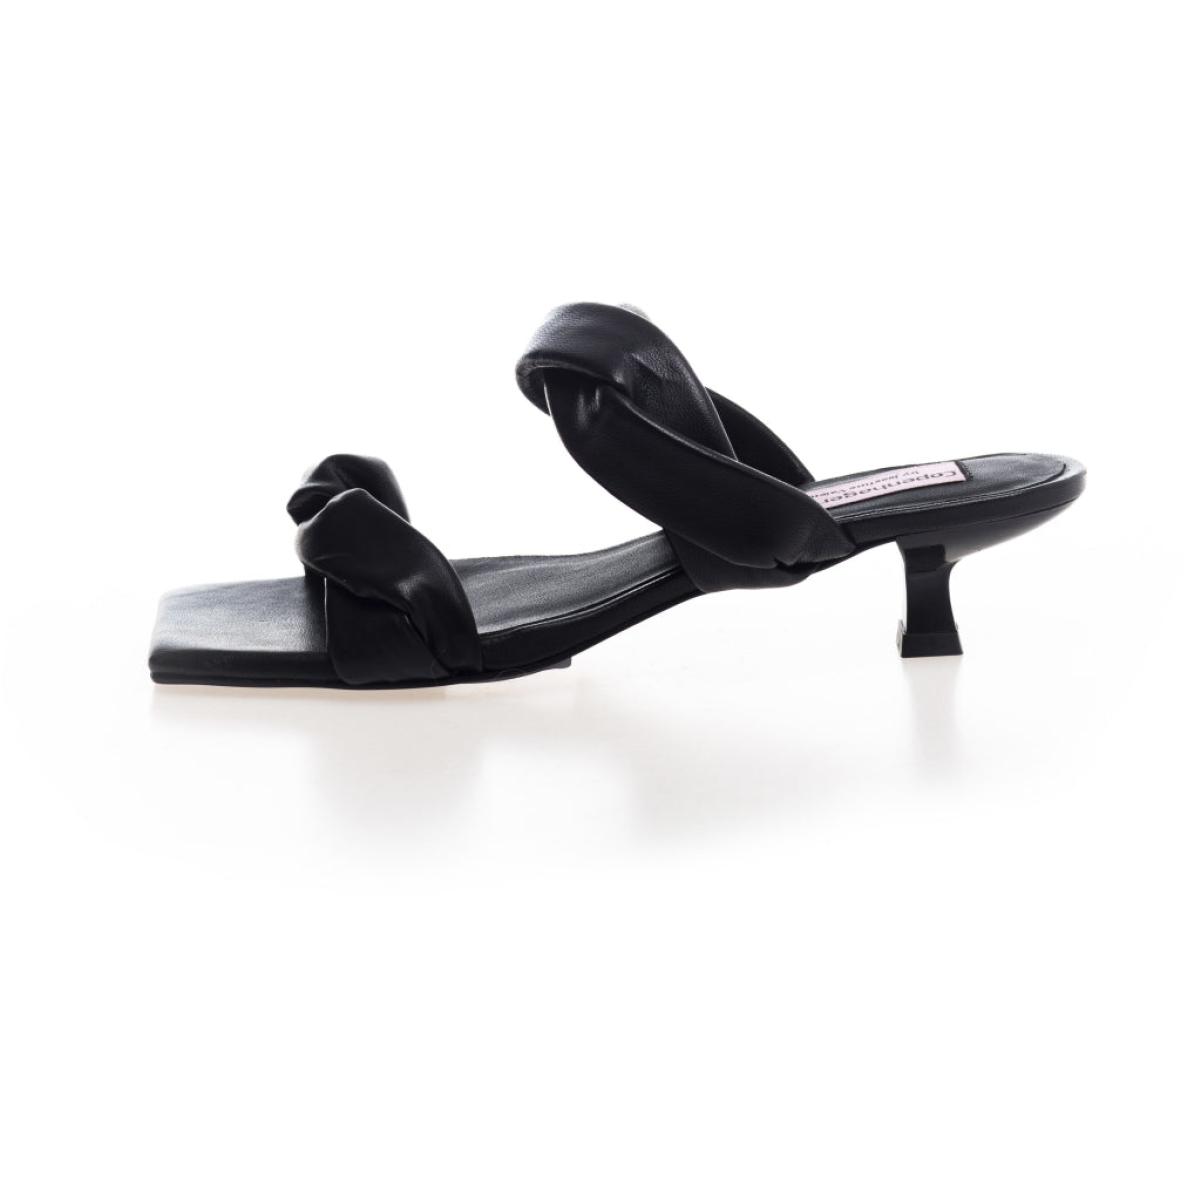 Copenhagen Shoes Smart Women Sunshine - Black Leather Sandals